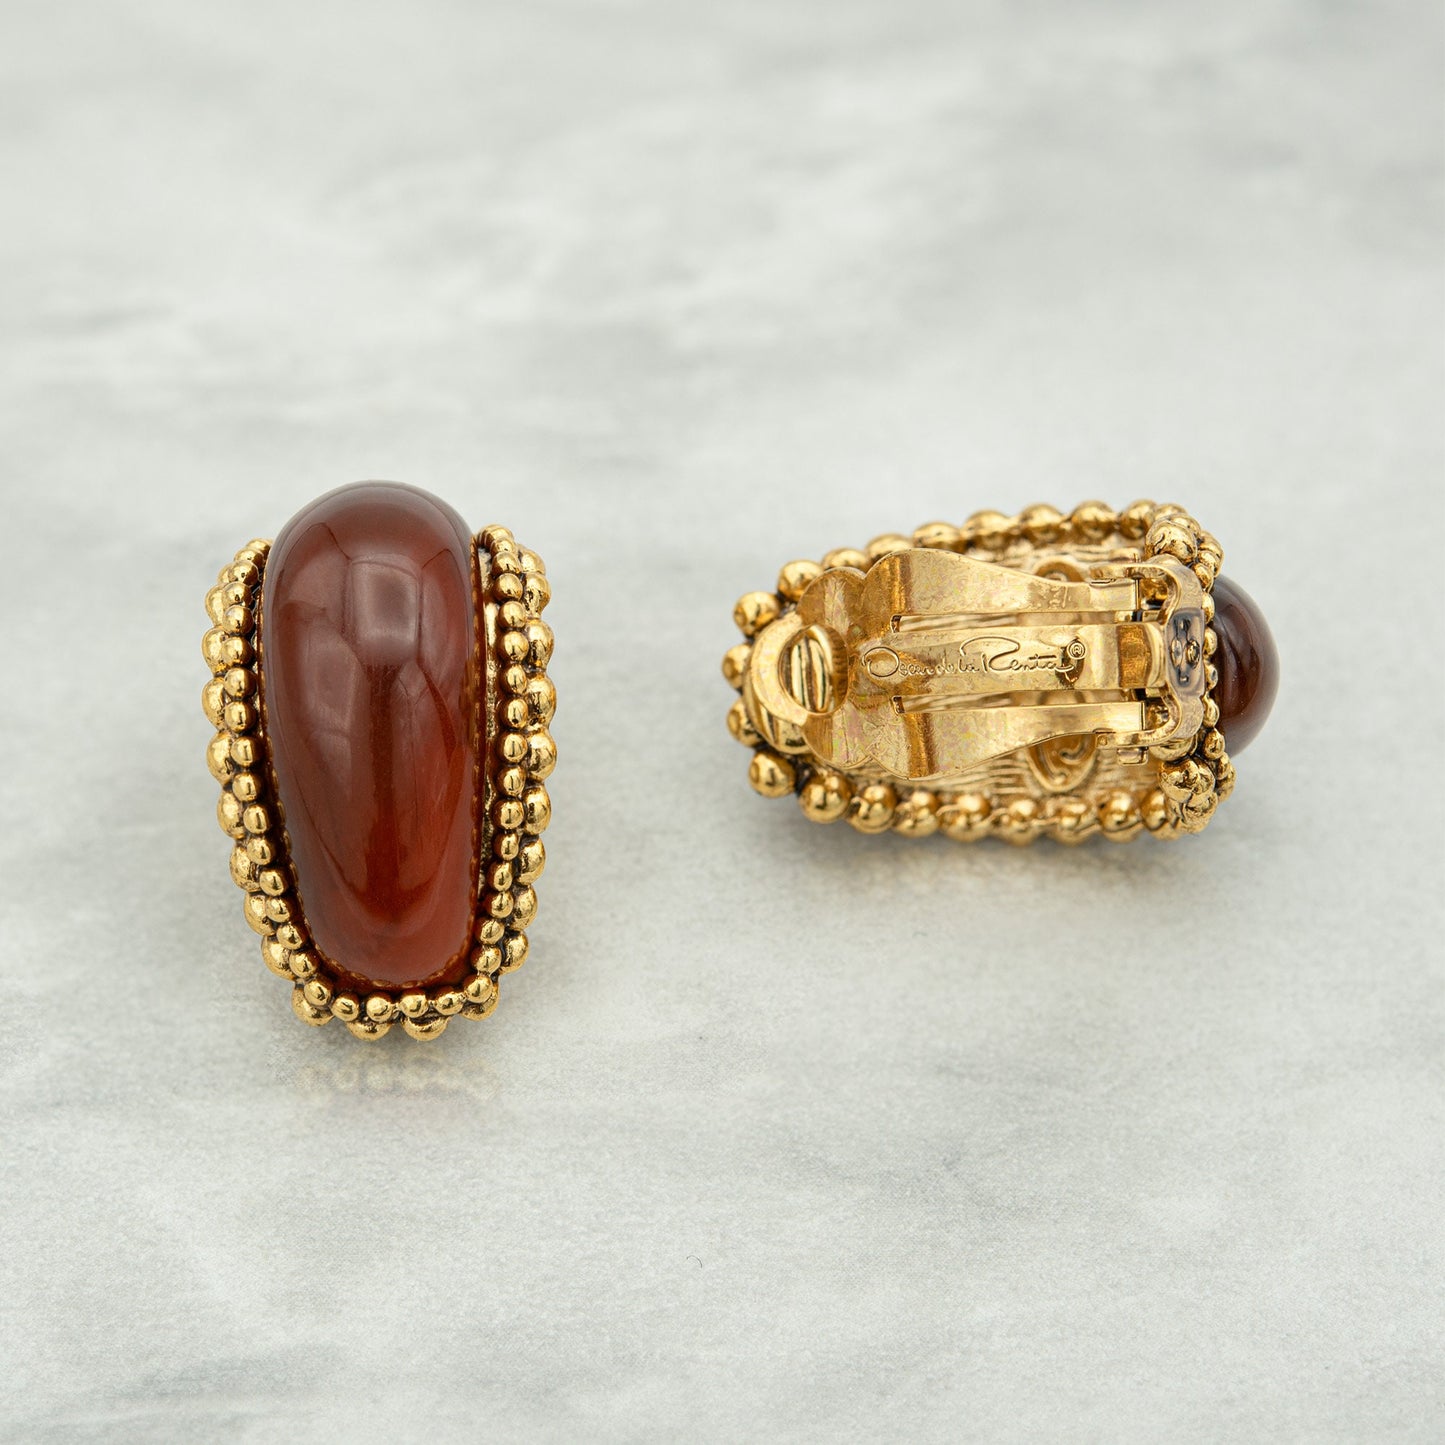 Vintage Earrings Oscar de la Renta Clip Earrings Gold with Carnelian Stones OSE-13500-C - Limited Stock - Never Worn